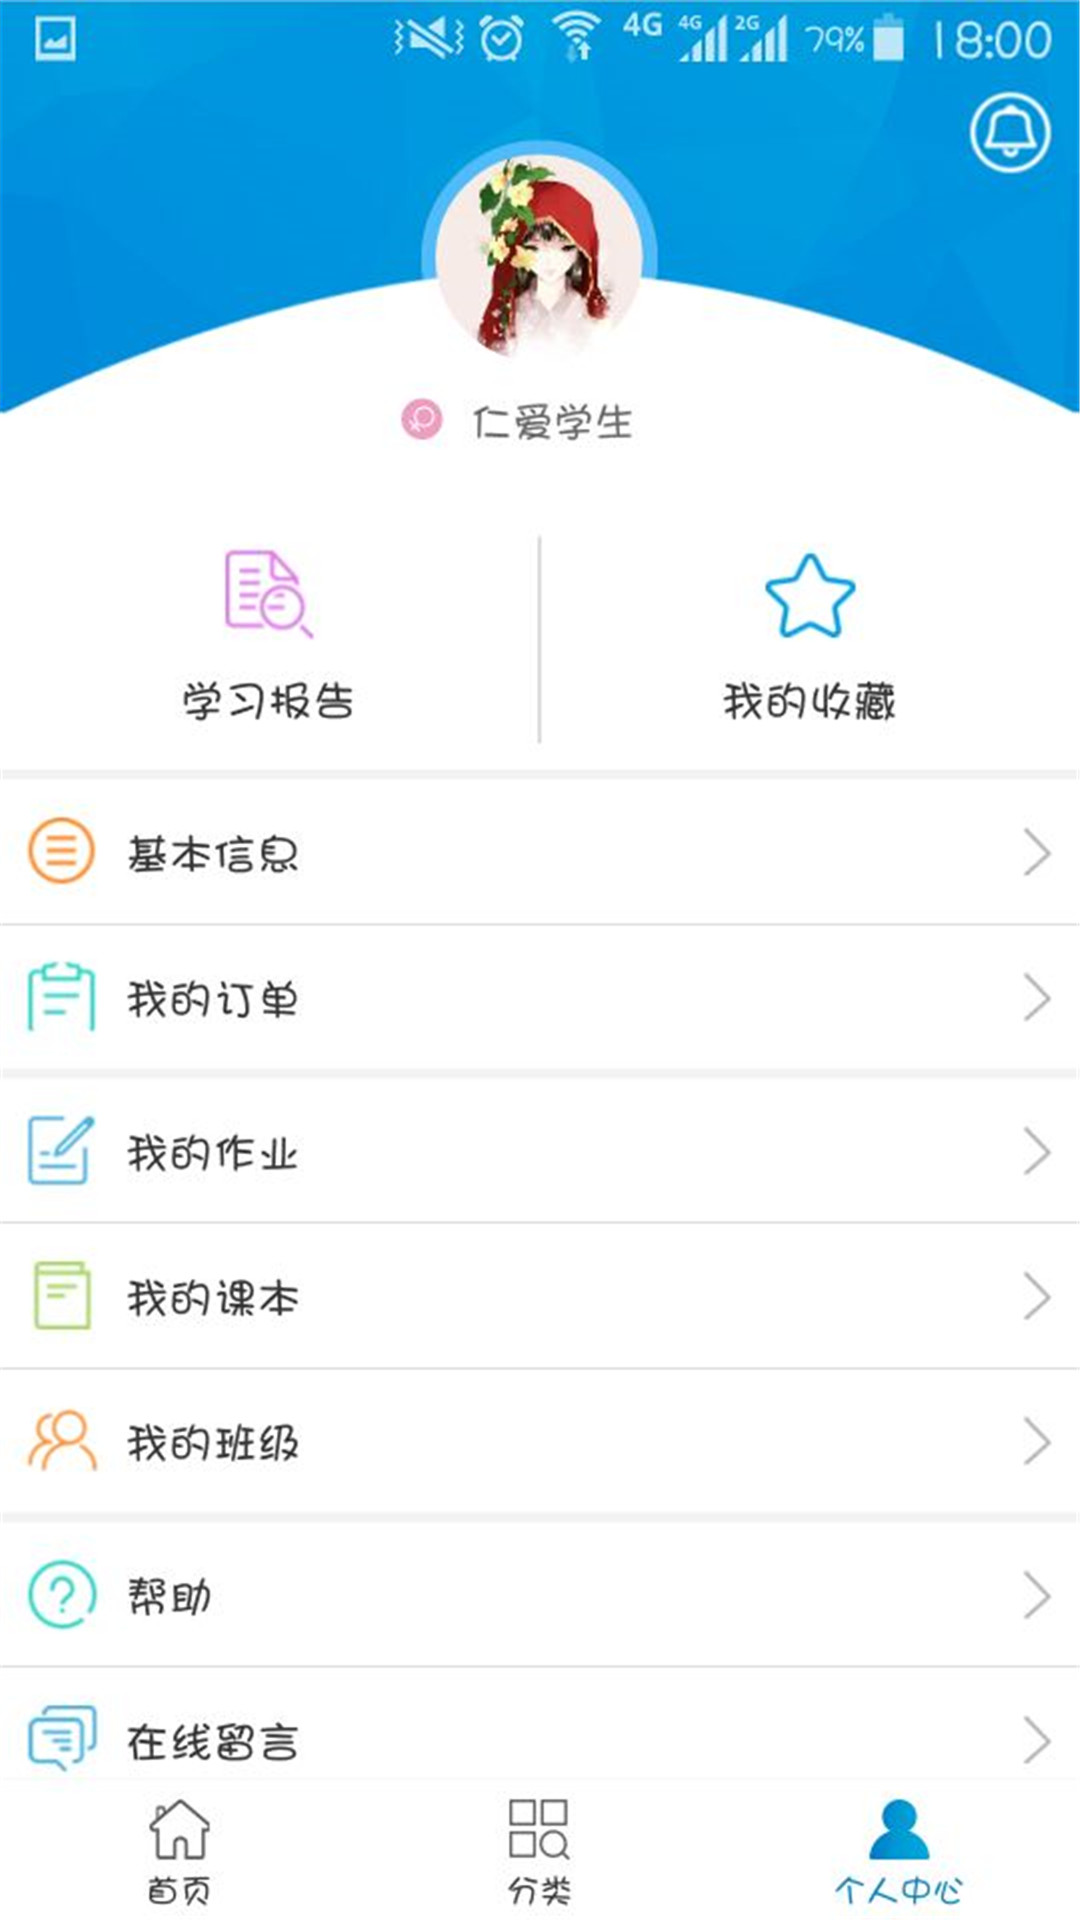 《仁爱教育》app下载地址介绍